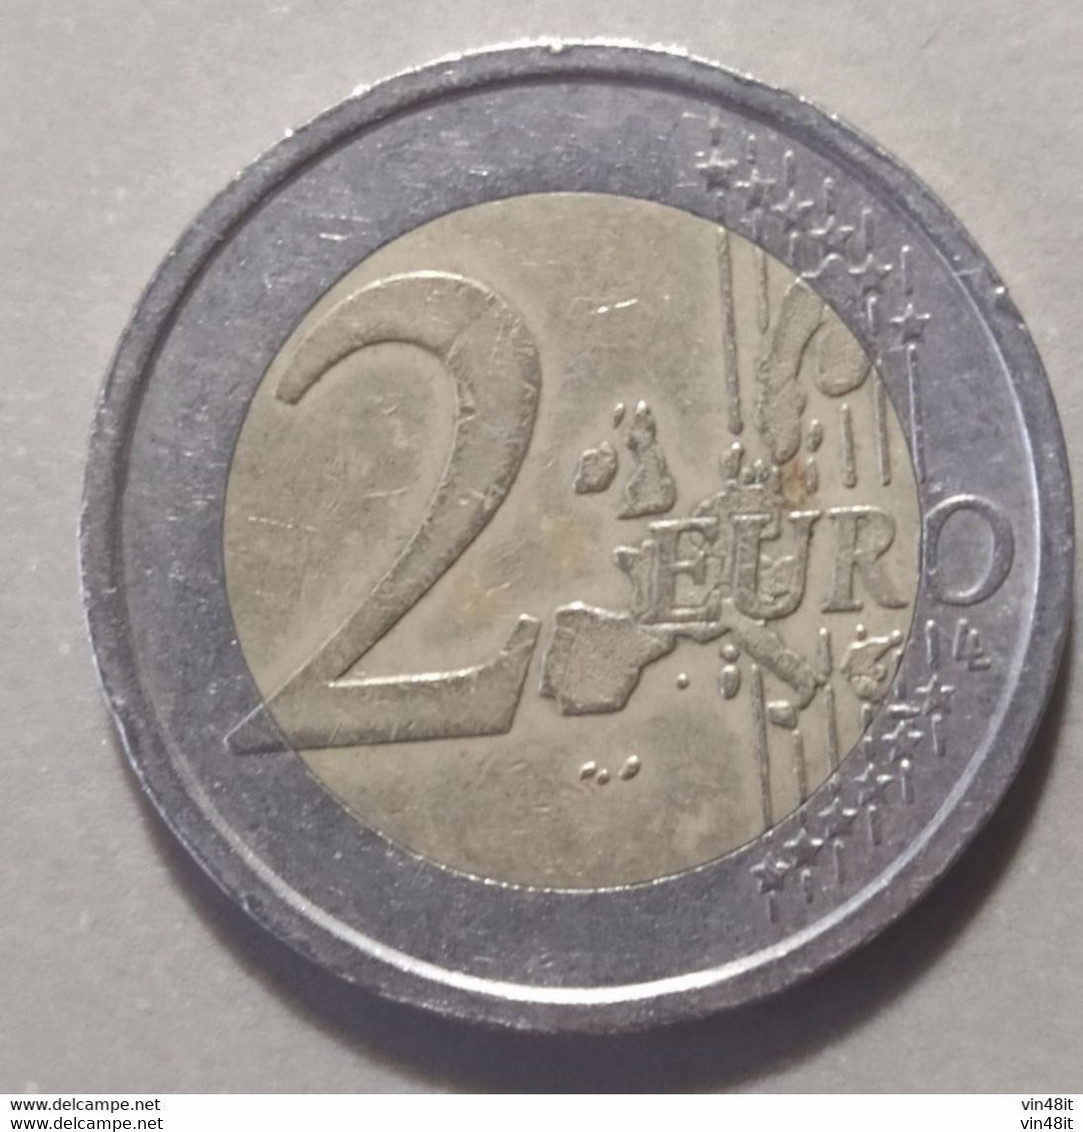 2008   - GERMANIA   - MONETA IN EURO  - DEL VALORE DI  2,00 EURO - USATA - Germania